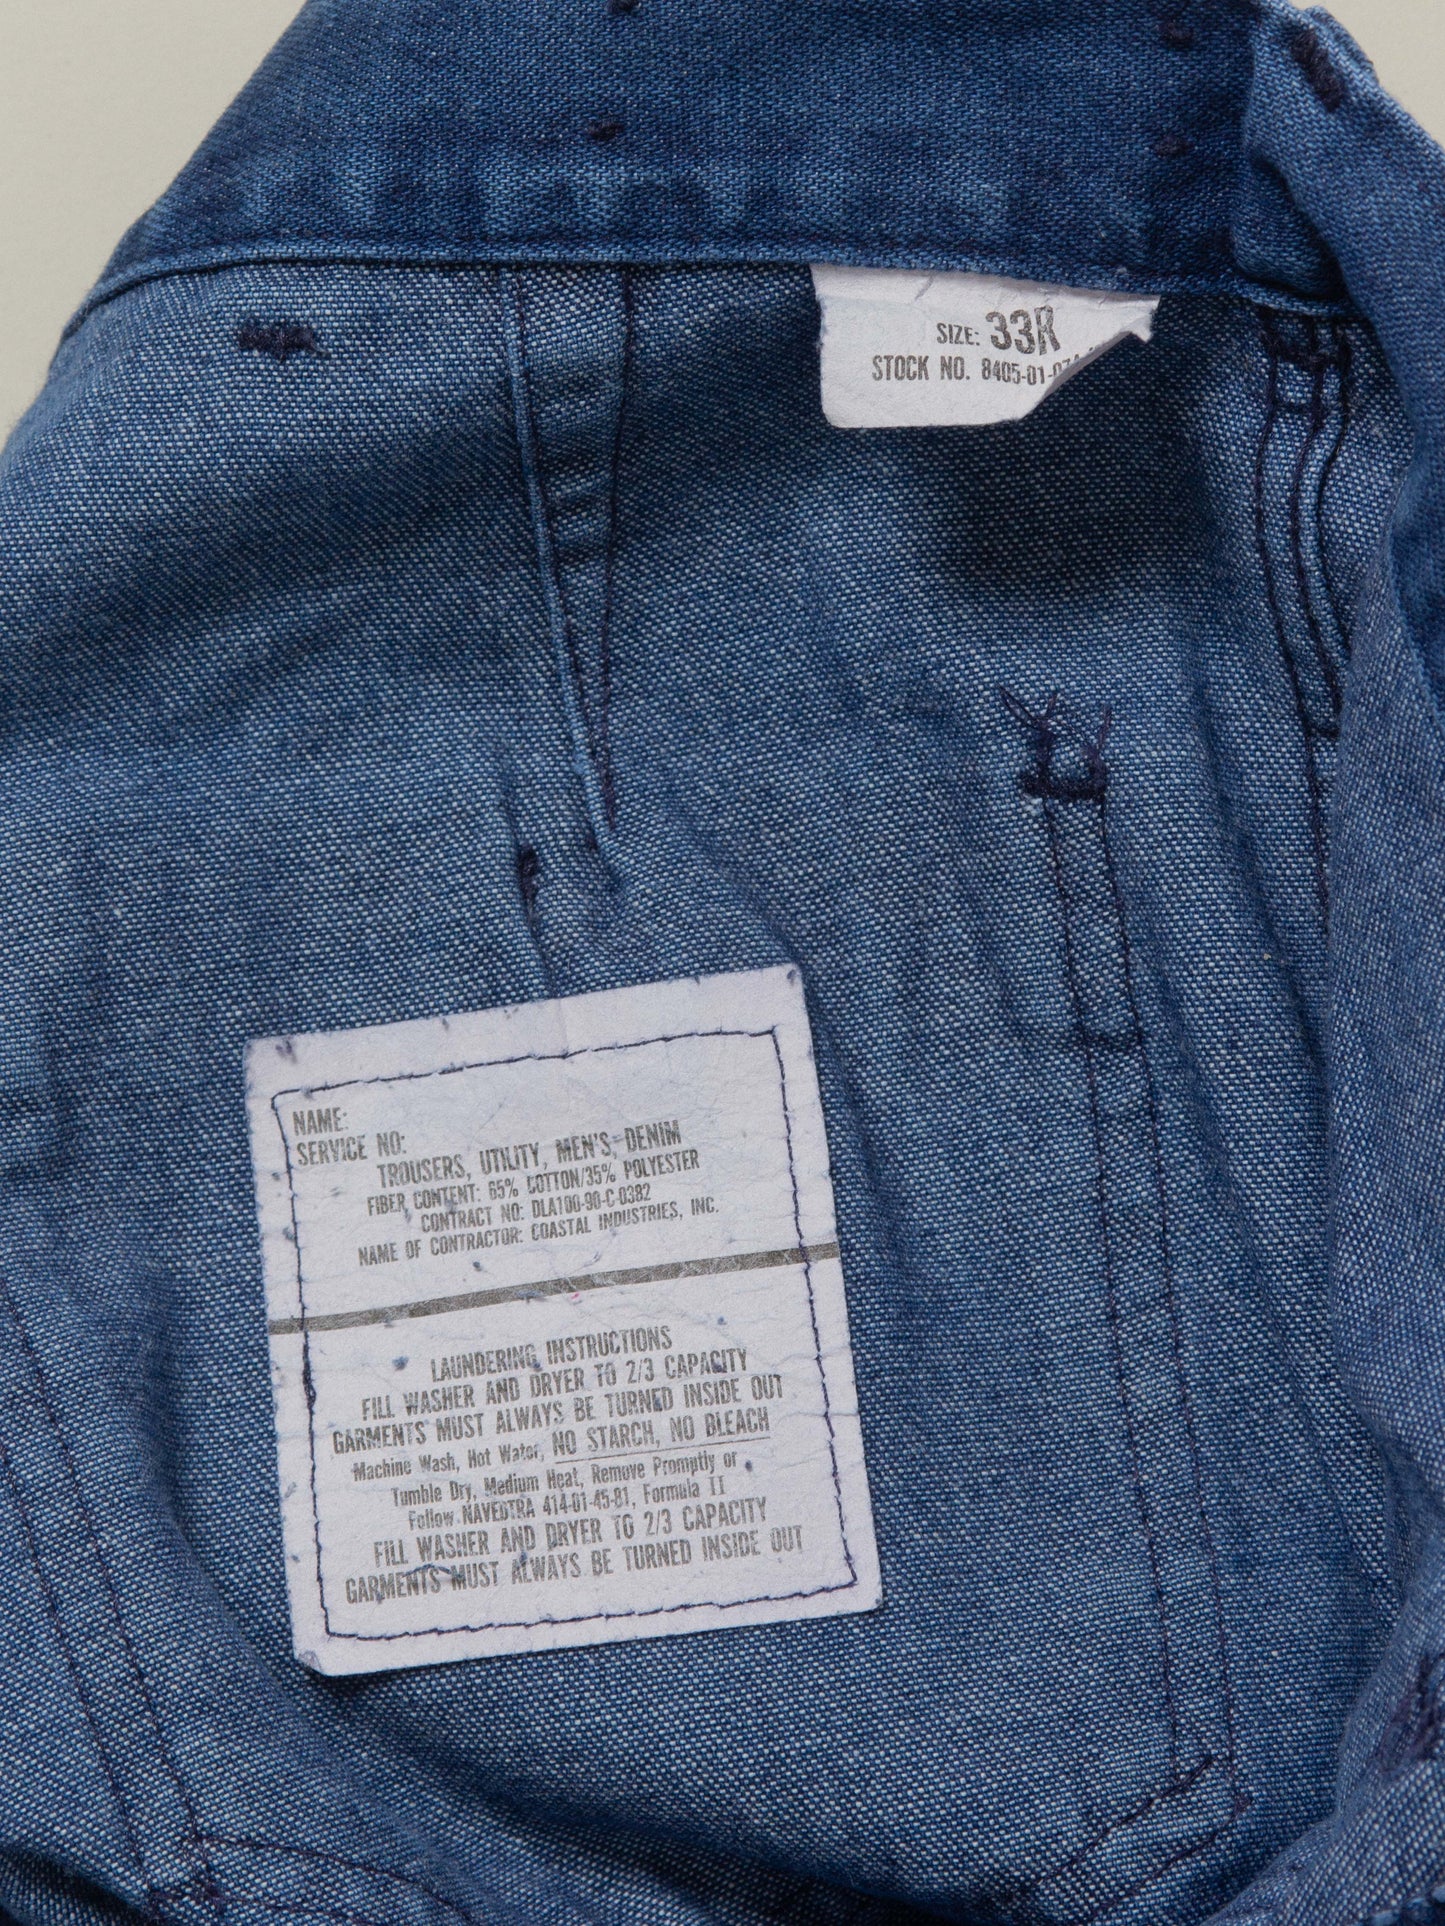 Vtg 1990s USN Bell Bottom Jeans - Made in USA (32x29)